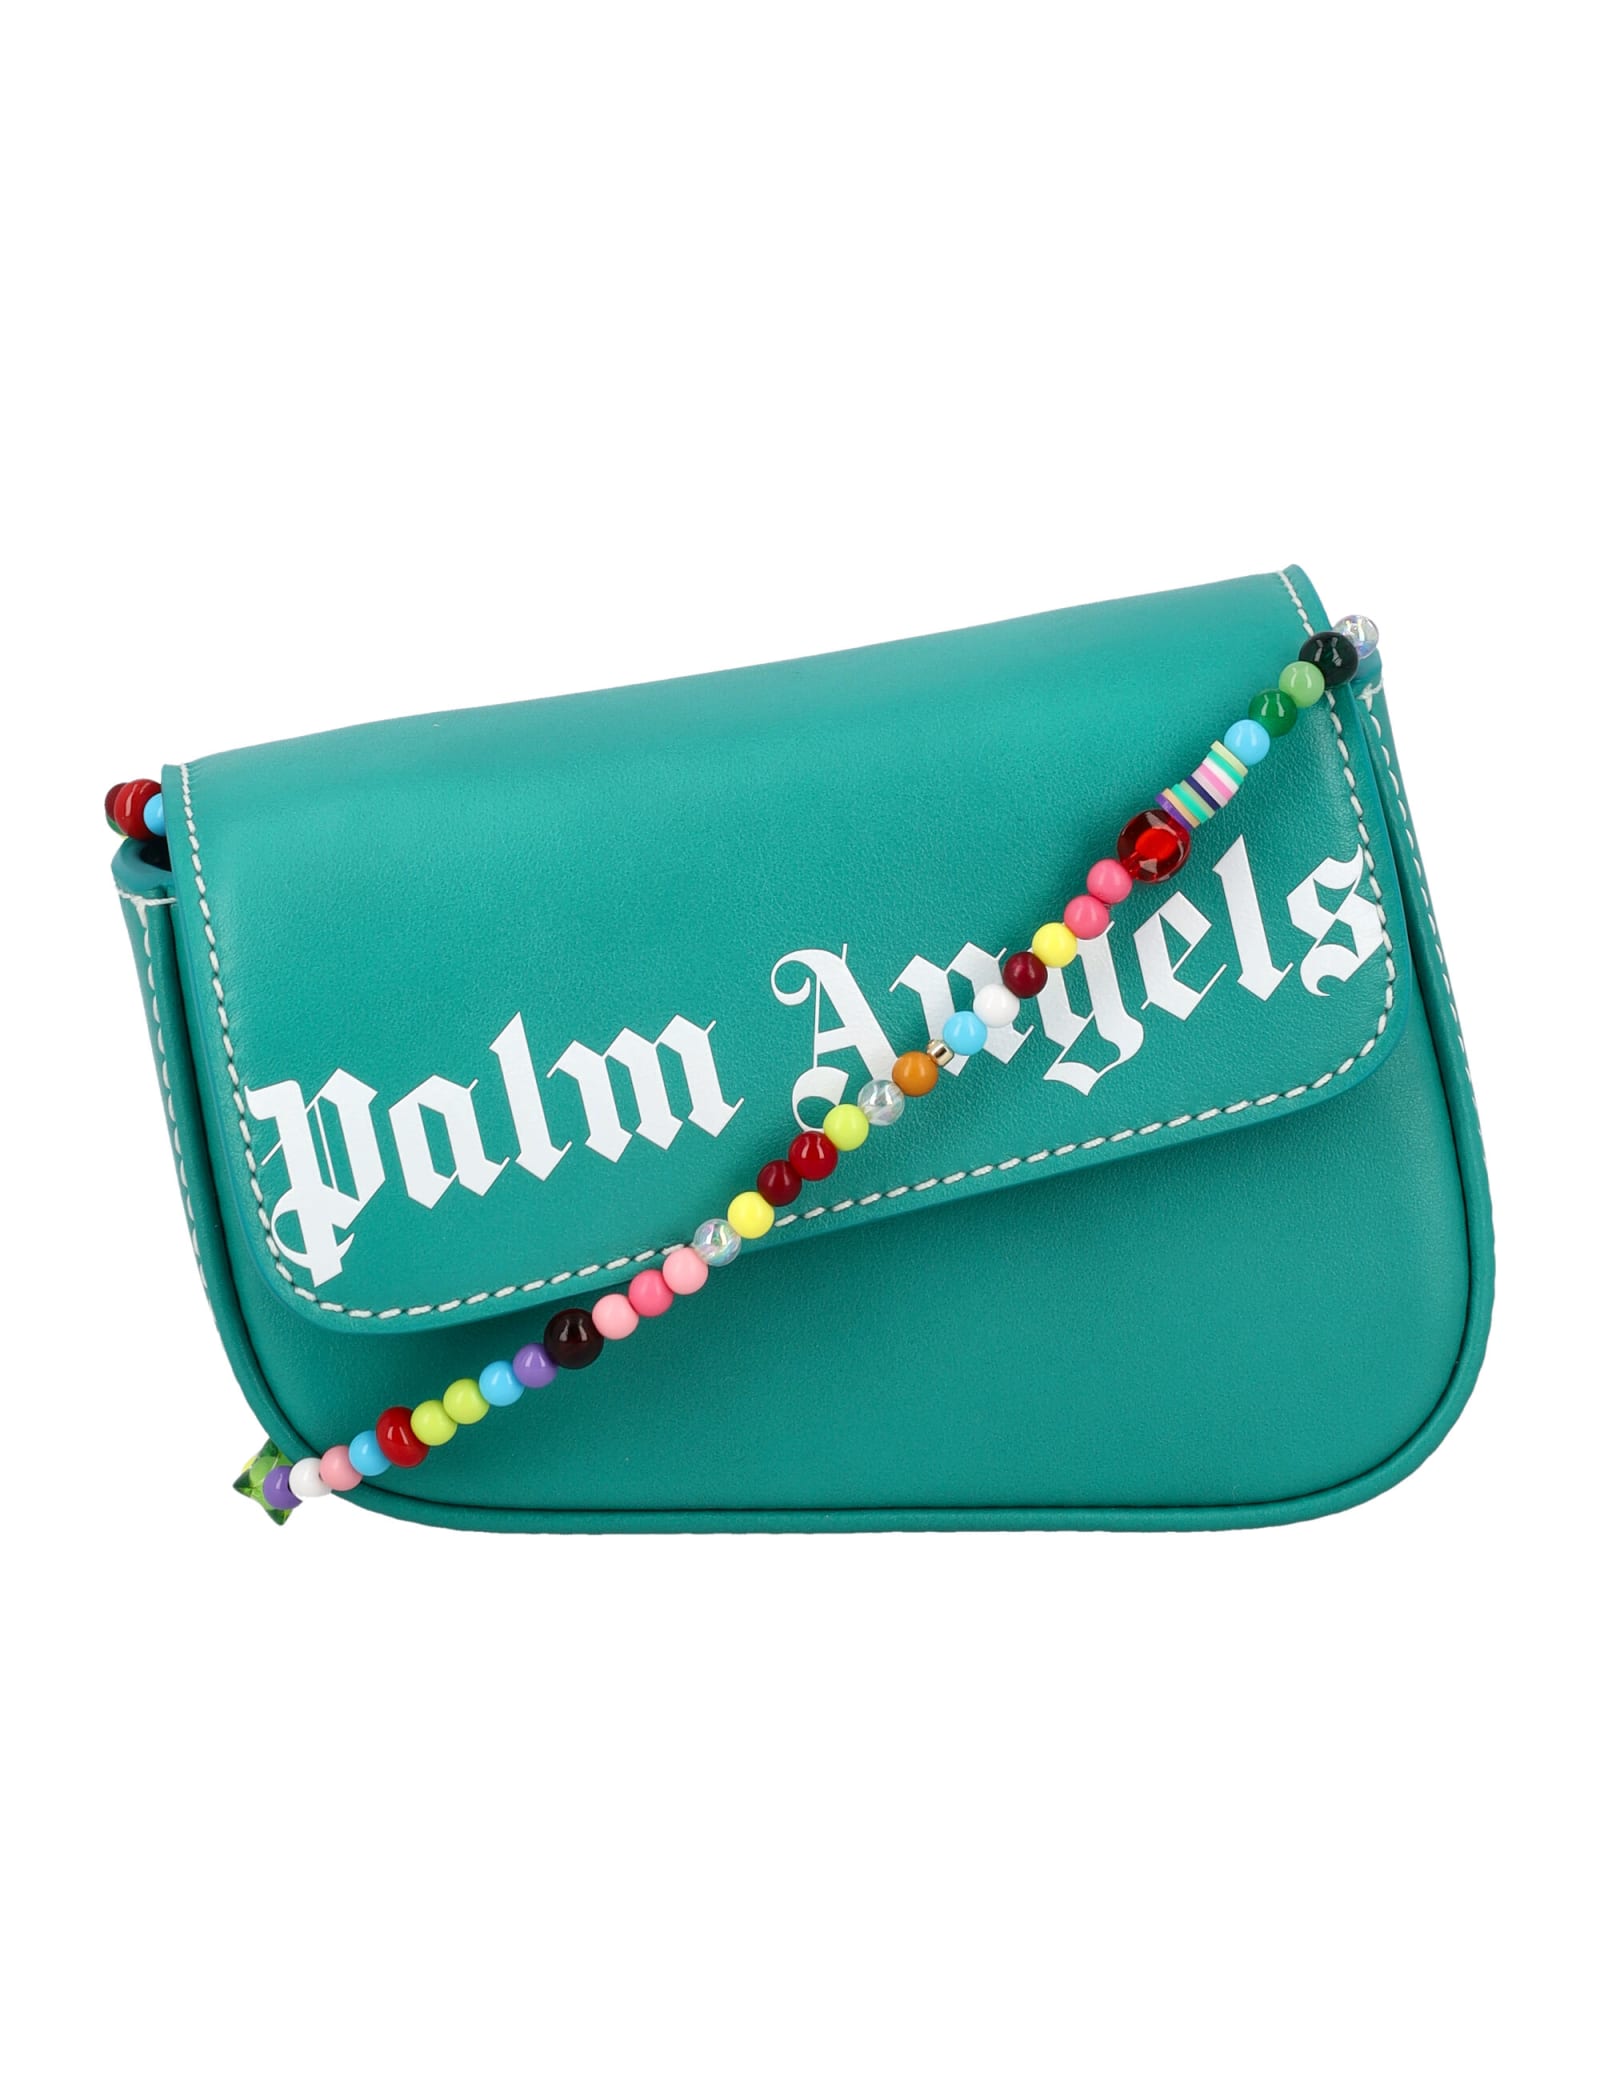 Palm Angels Beads Crash Mini Bag